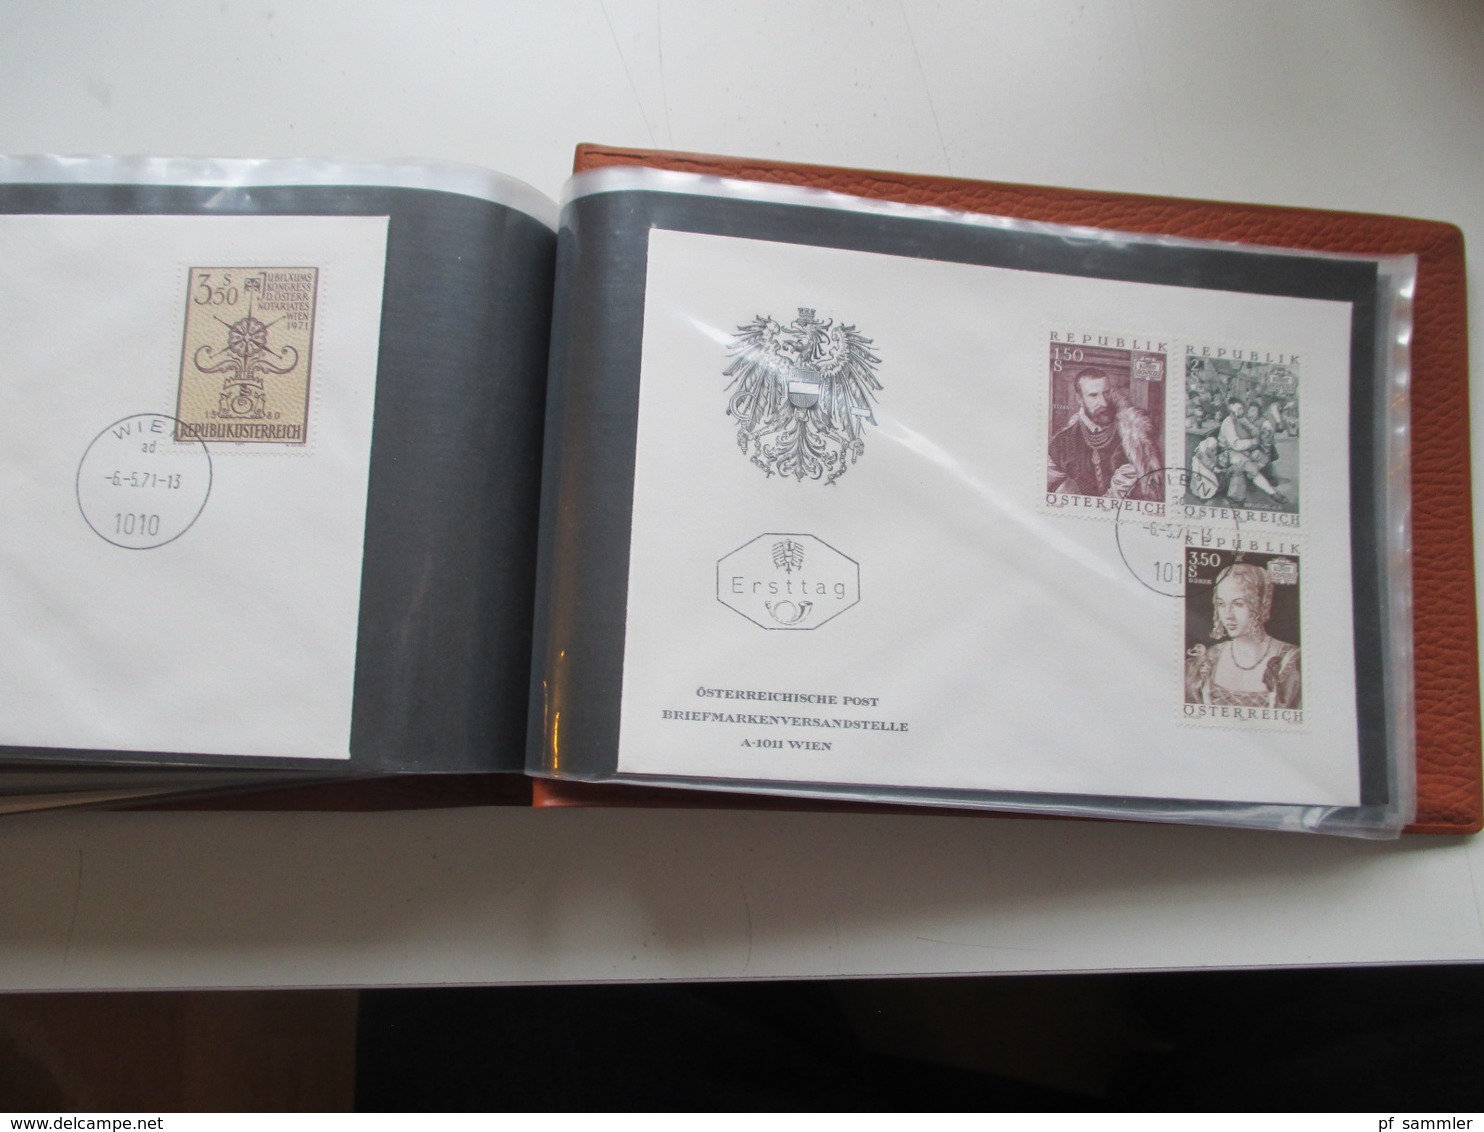 Österreich FDC / Ersttagsbriefe der Jahre 1967 - 1991 in 7 dicken Briefalben! mit knapp 700 Belegen! mit Christkindl